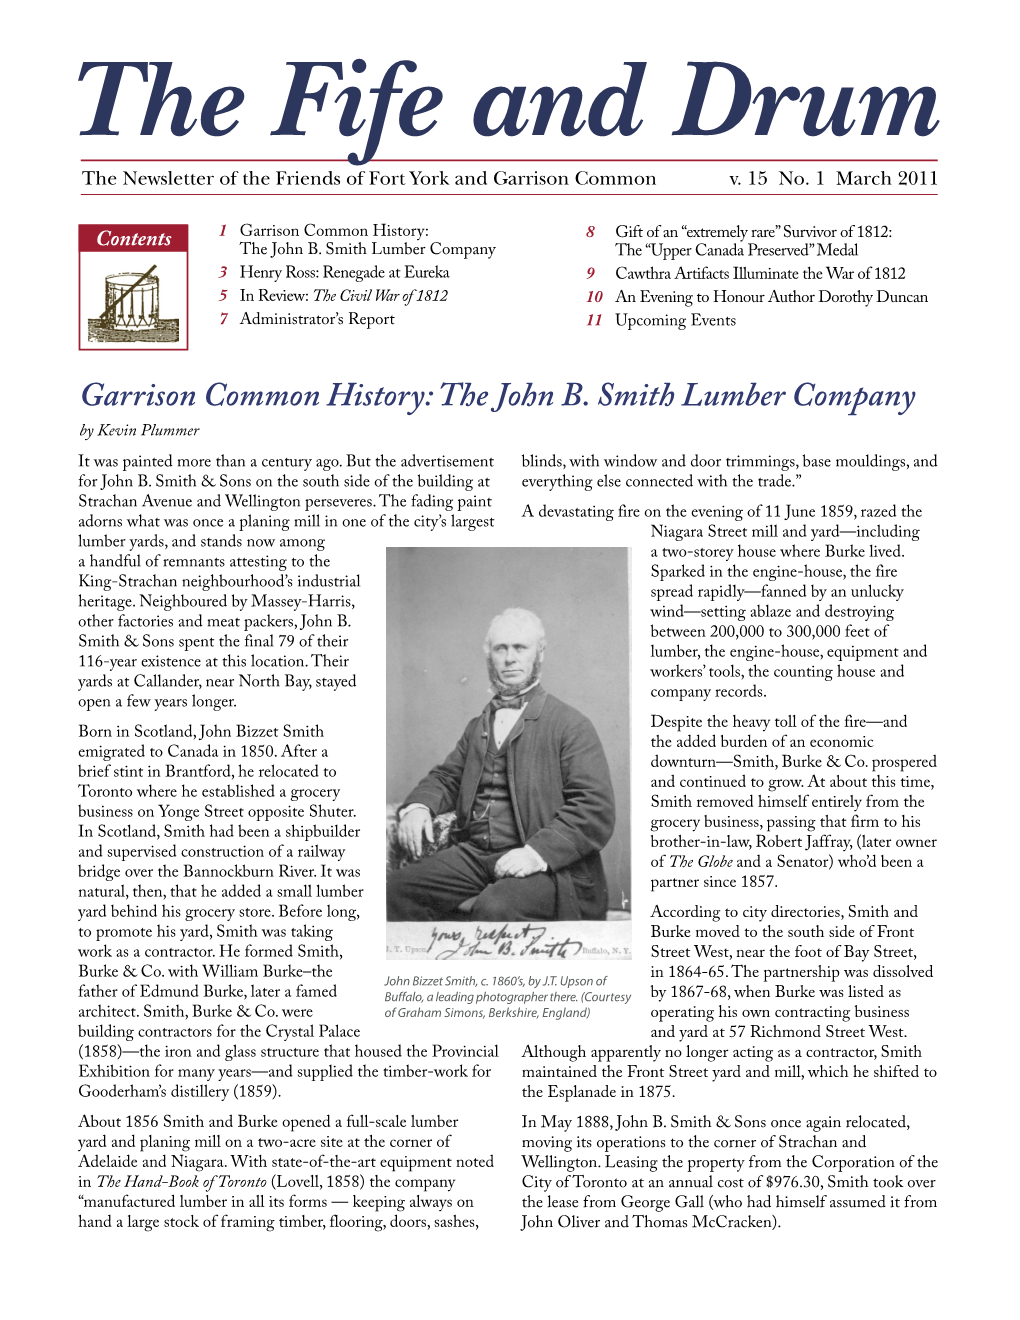 The John B. Smith Lumber Company